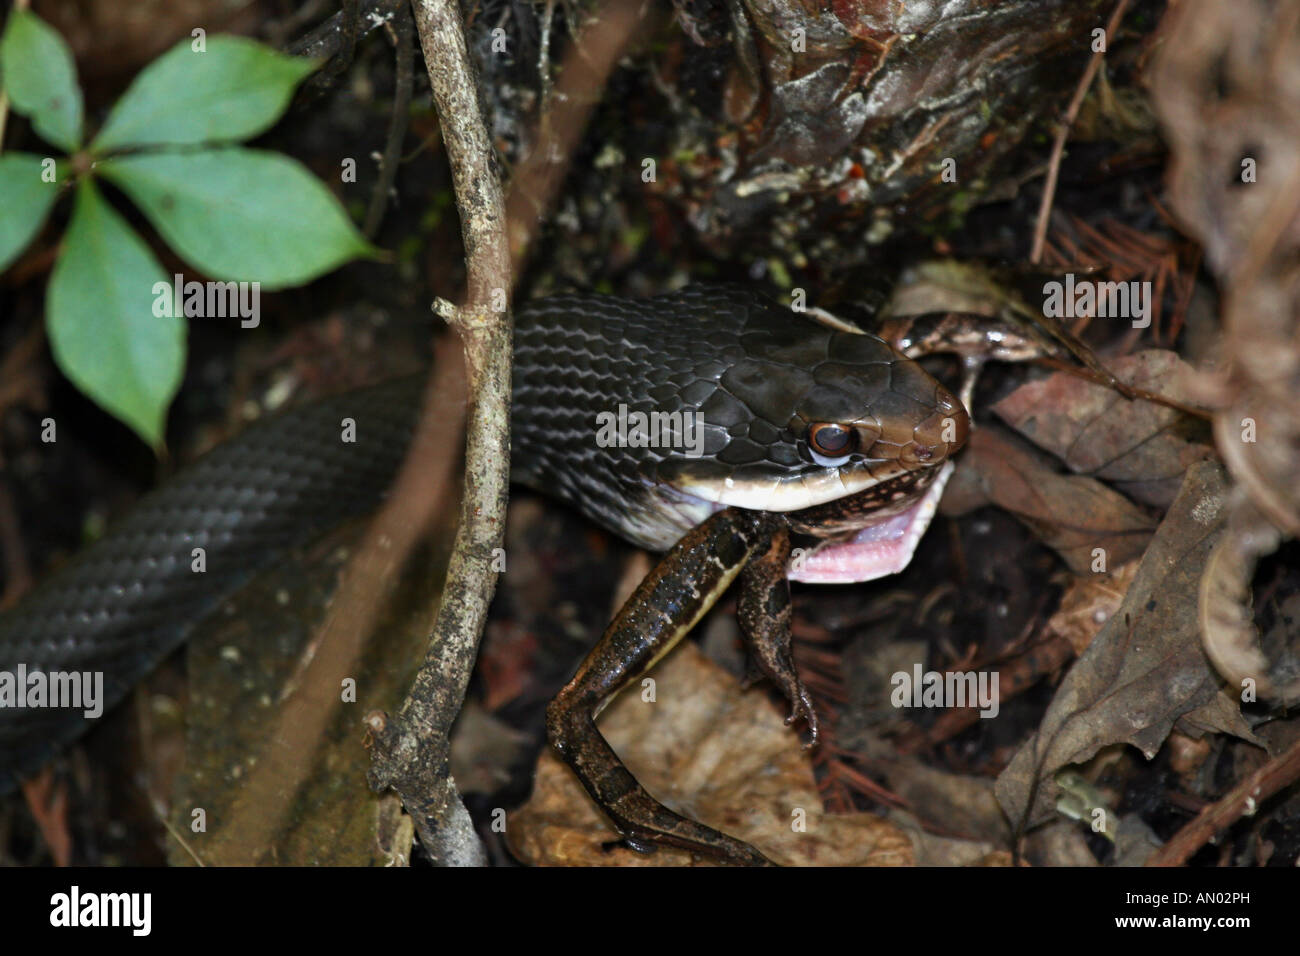 Racer serpiente que se come la rana Foto de stock